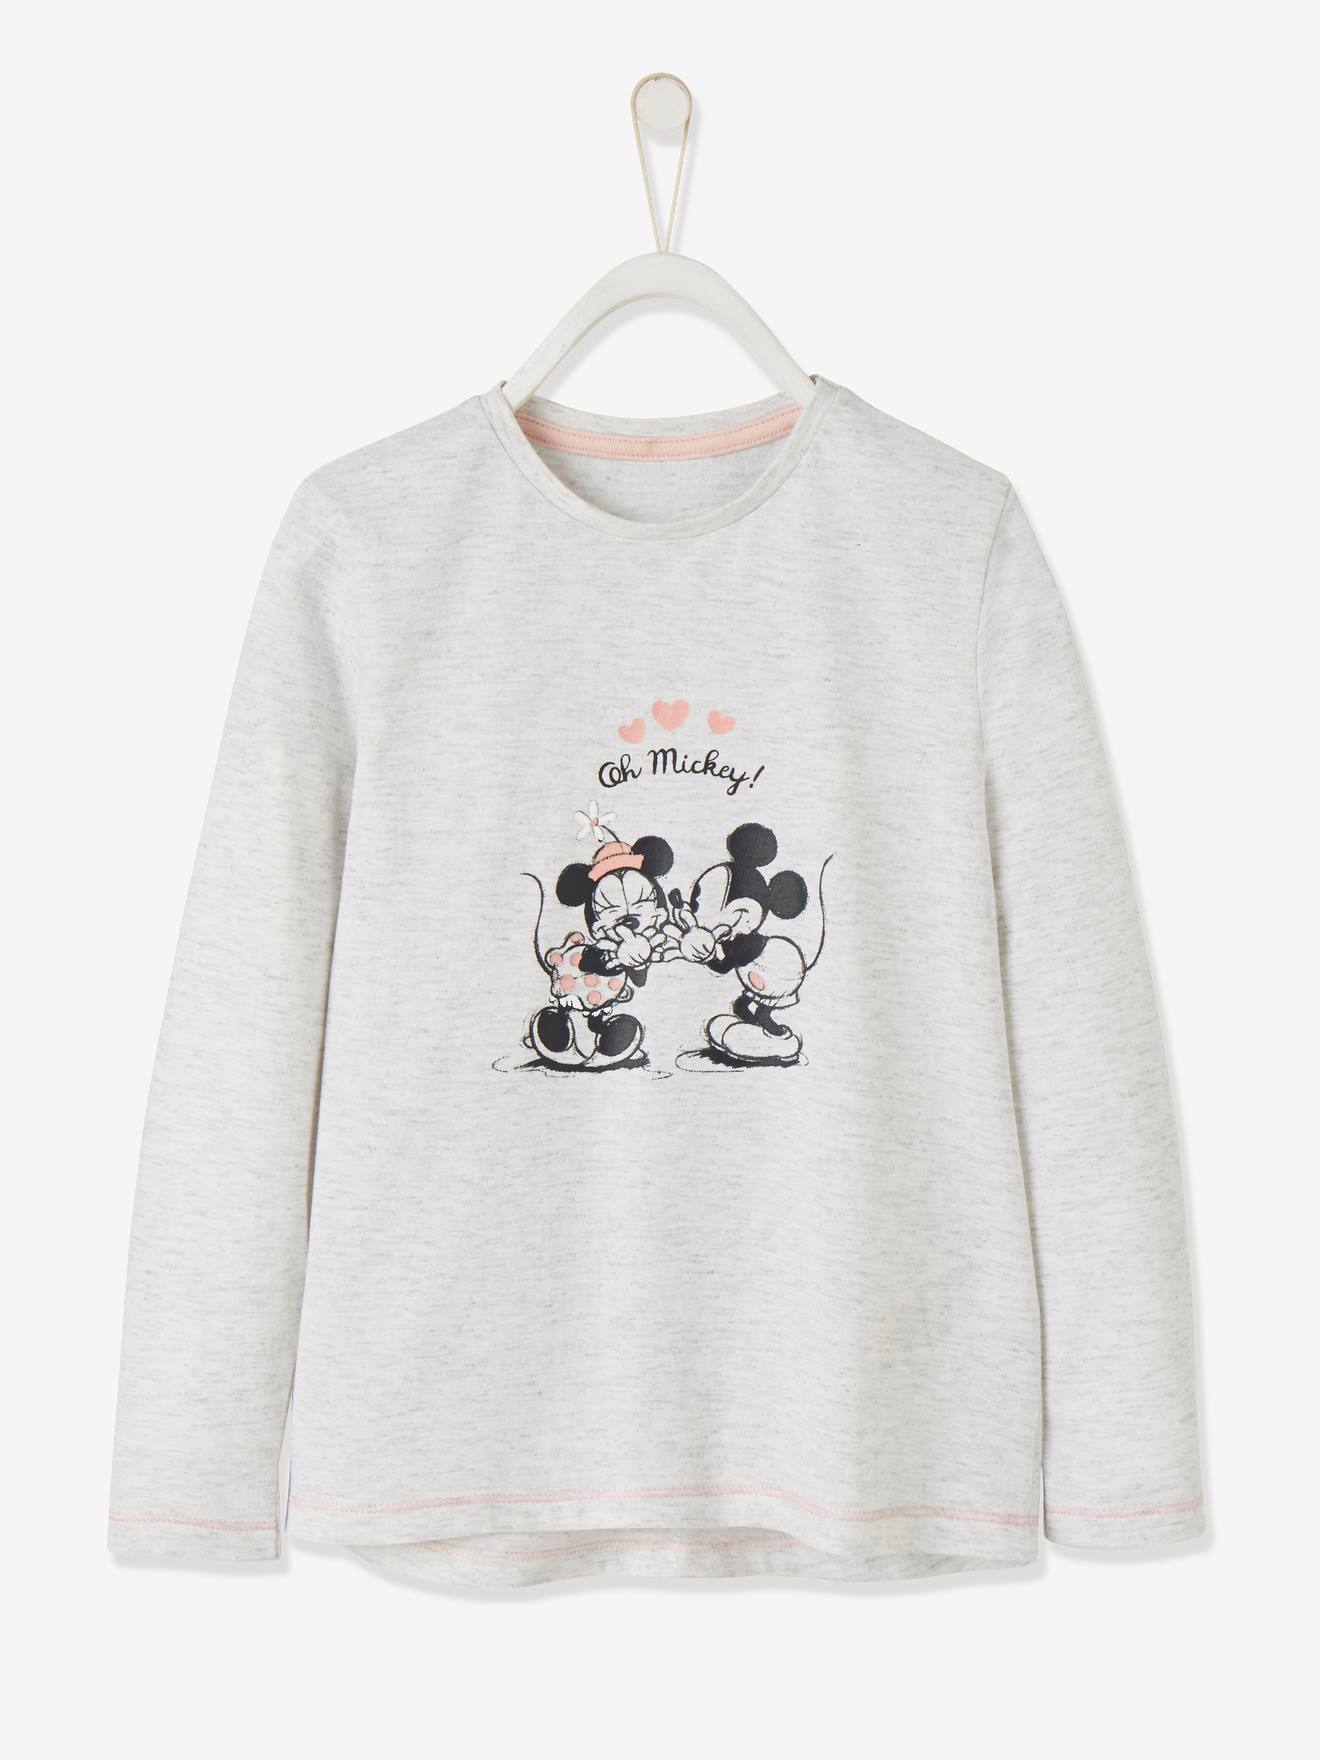 T-shirt fille Disney Minnie et Mickey® avec paillettes gris clair chiné